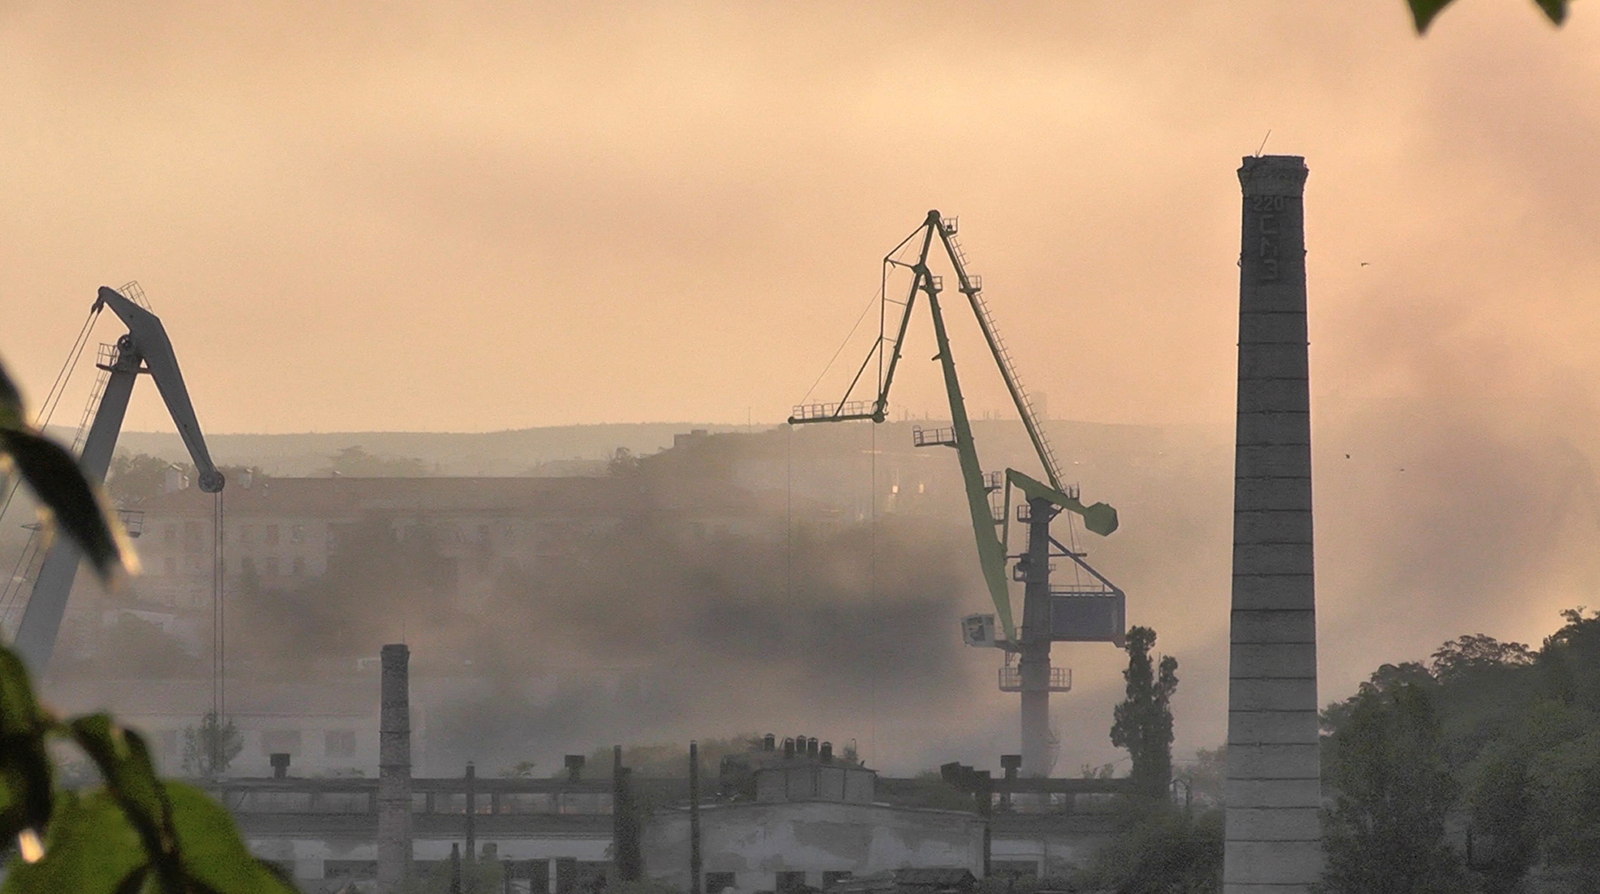 الدخان يتصاعد من حوض بناء السفن الذي تعرض لهجوم صاروخي أوكراني في سيفاستوبول، شبه جزيرة القرم، في هذه الصورة الثابتة من الفيديو الذي تم التقاطه في 13 سبتمبر.